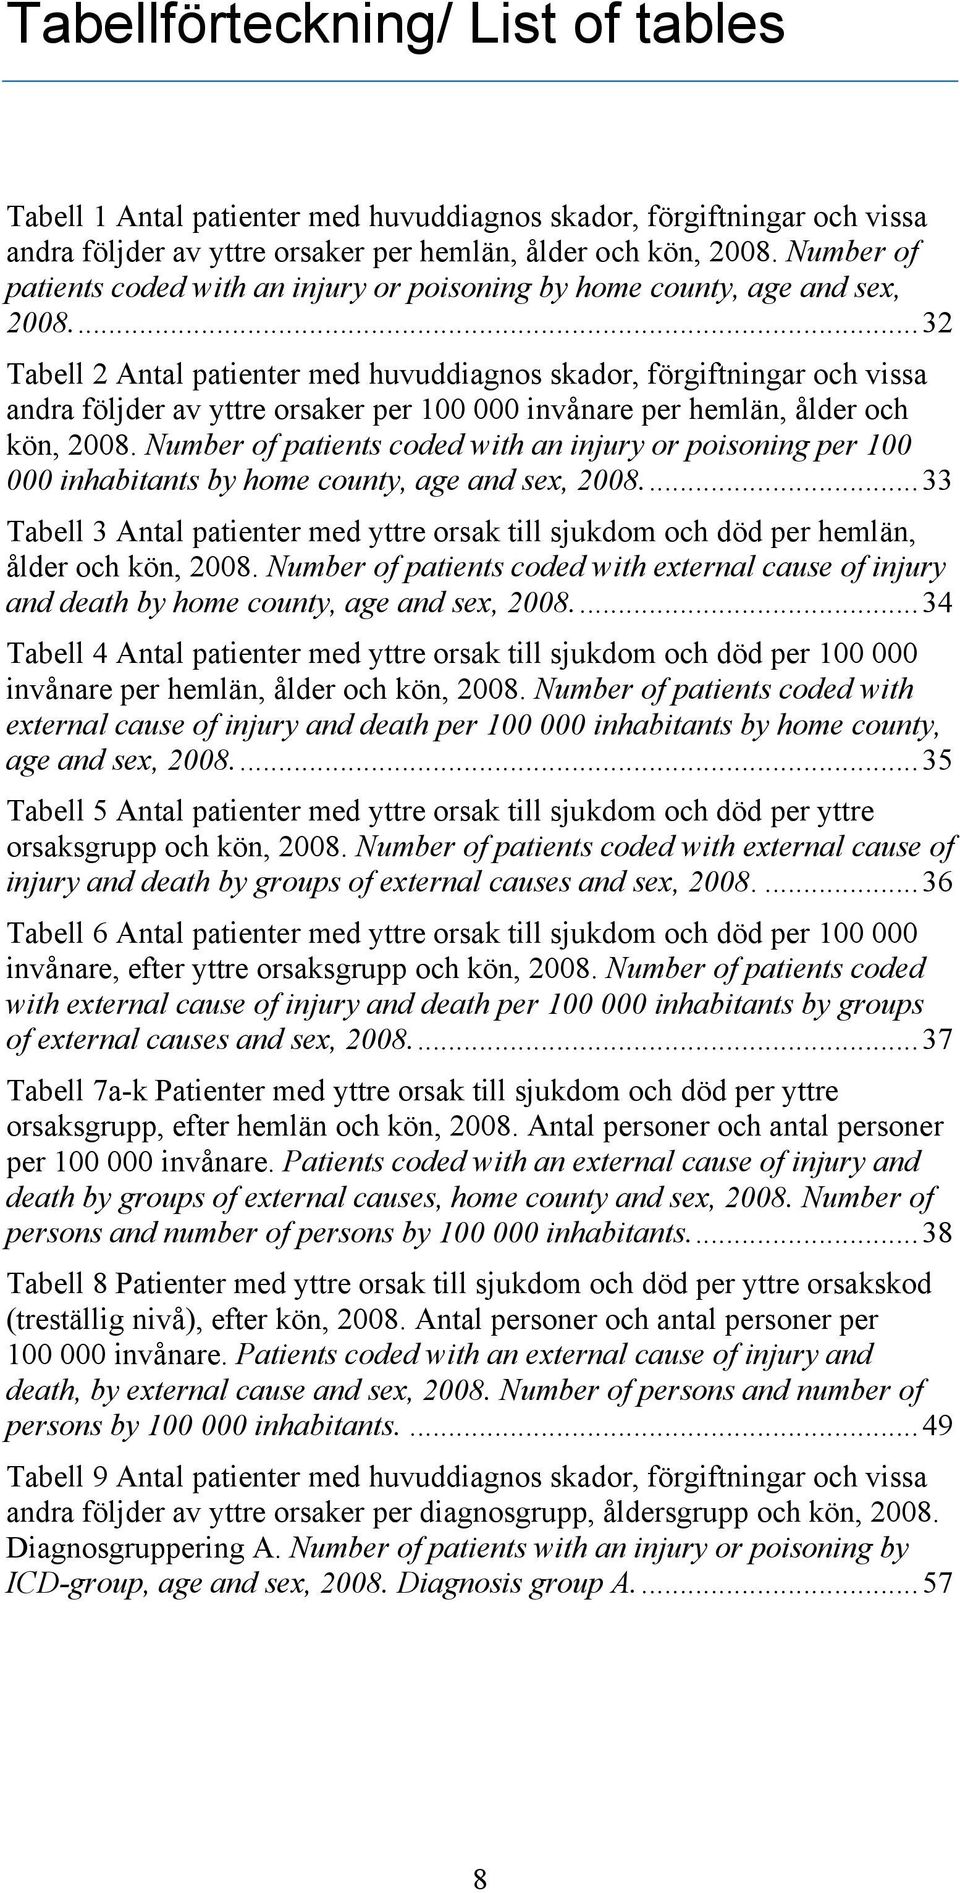 ..32 Tabell 2 Antal patienter med huvuddiagnos skador, förgiftningar och vissa andra följder av yttre orsaker per 100 000 invånare per hemlän, ålder och kön, 2008.